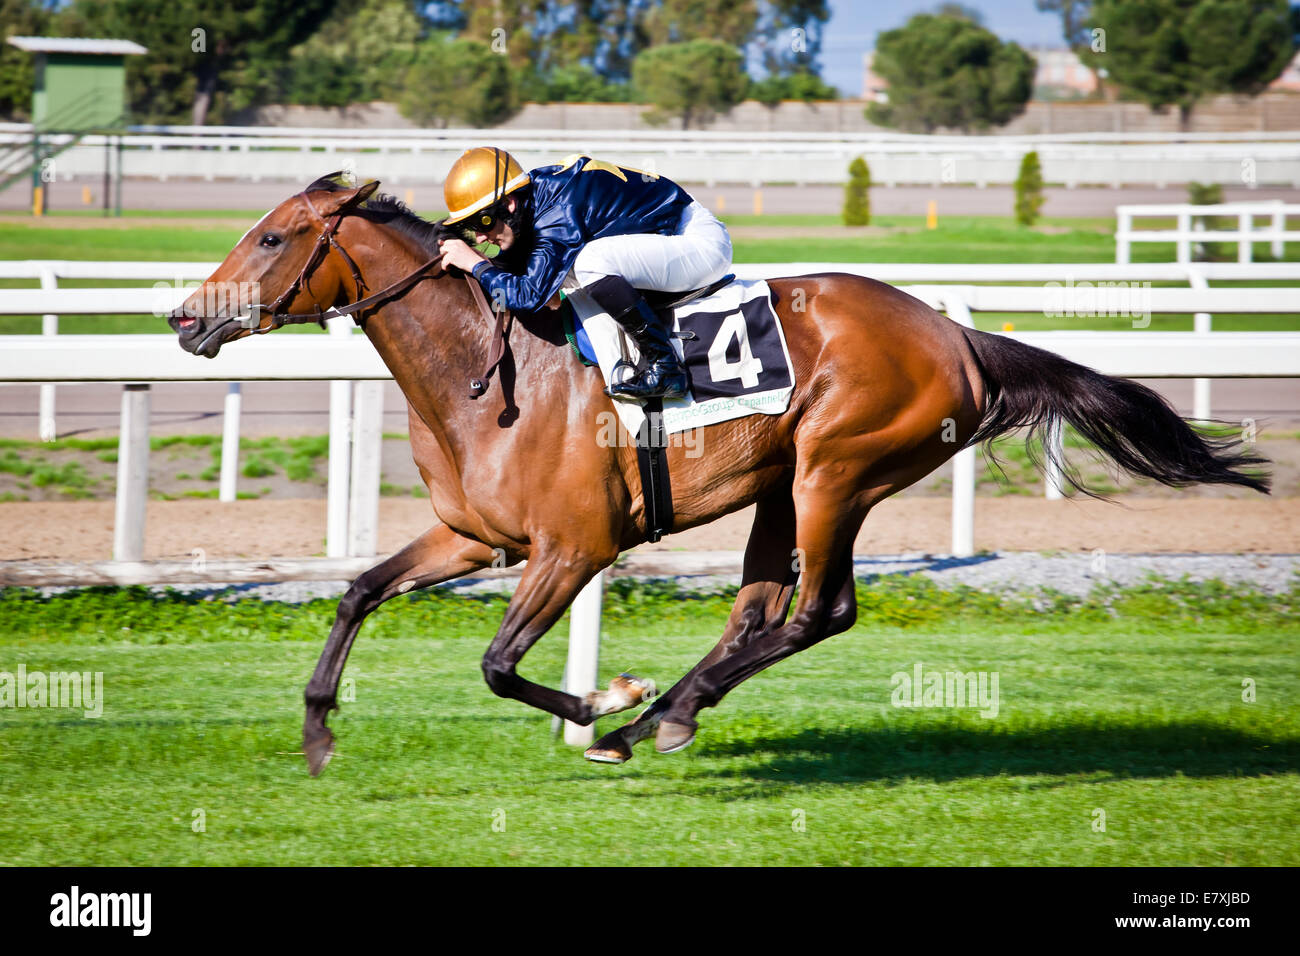 Rome, Italy, 01 May, 2014: Jockey rides horse during race one. Stock Photo